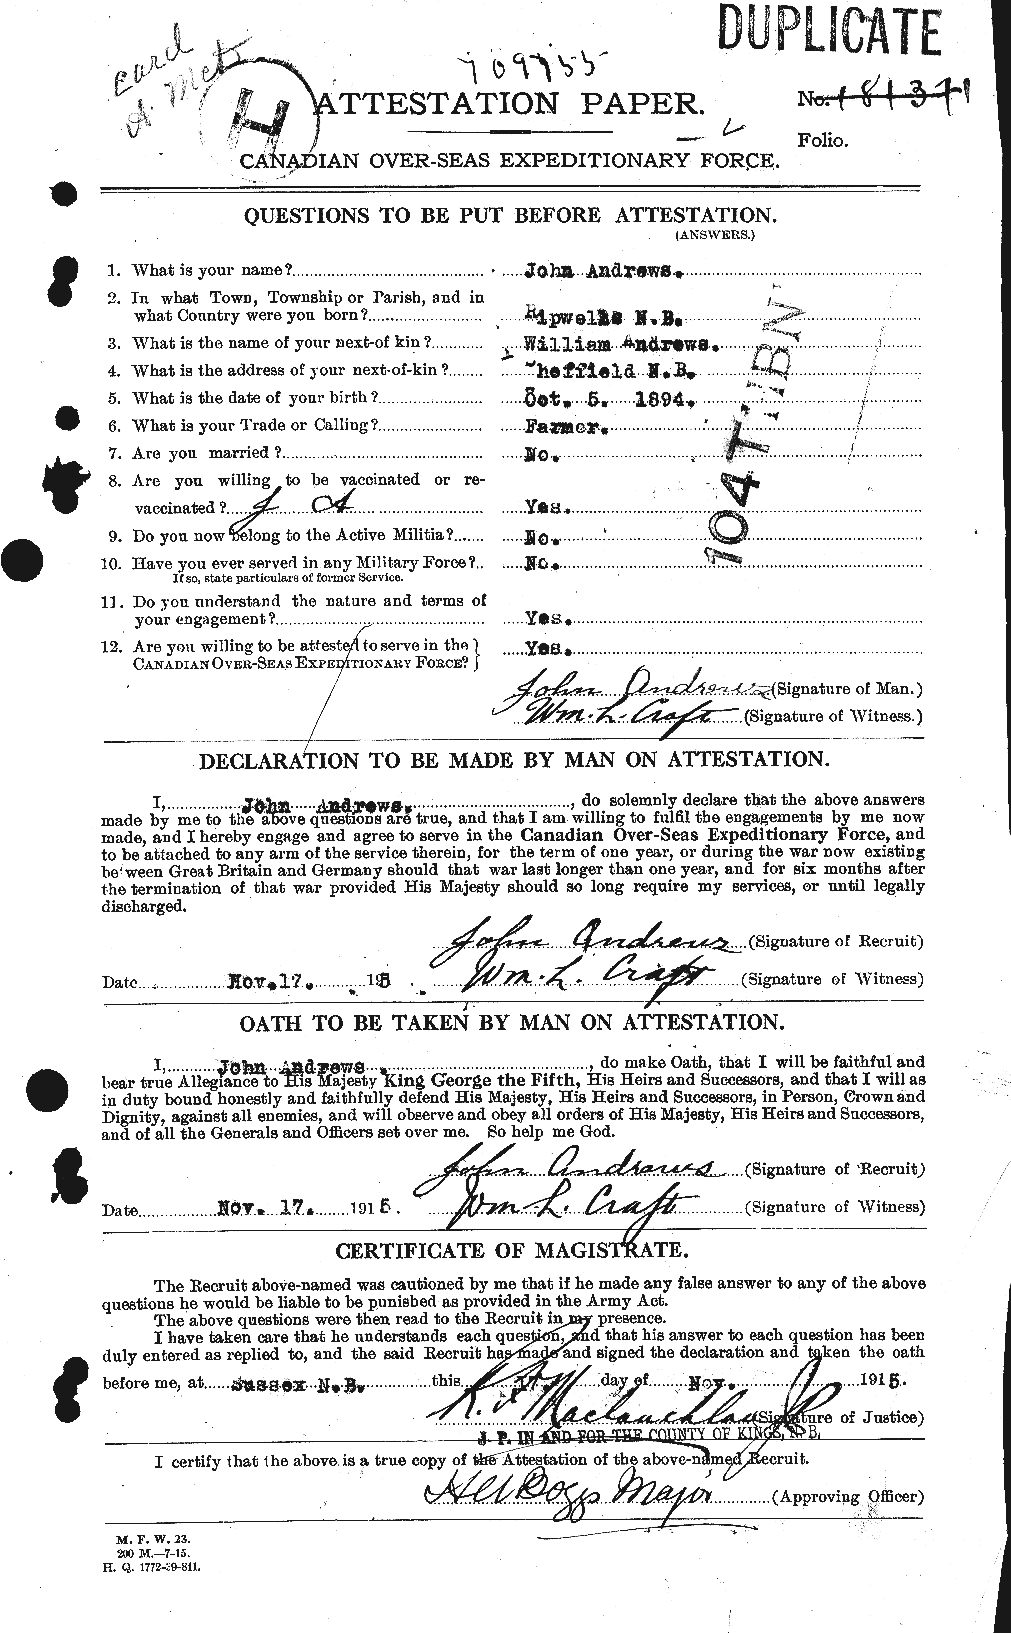 Dossiers du Personnel de la Première Guerre mondiale - CEC 210211a